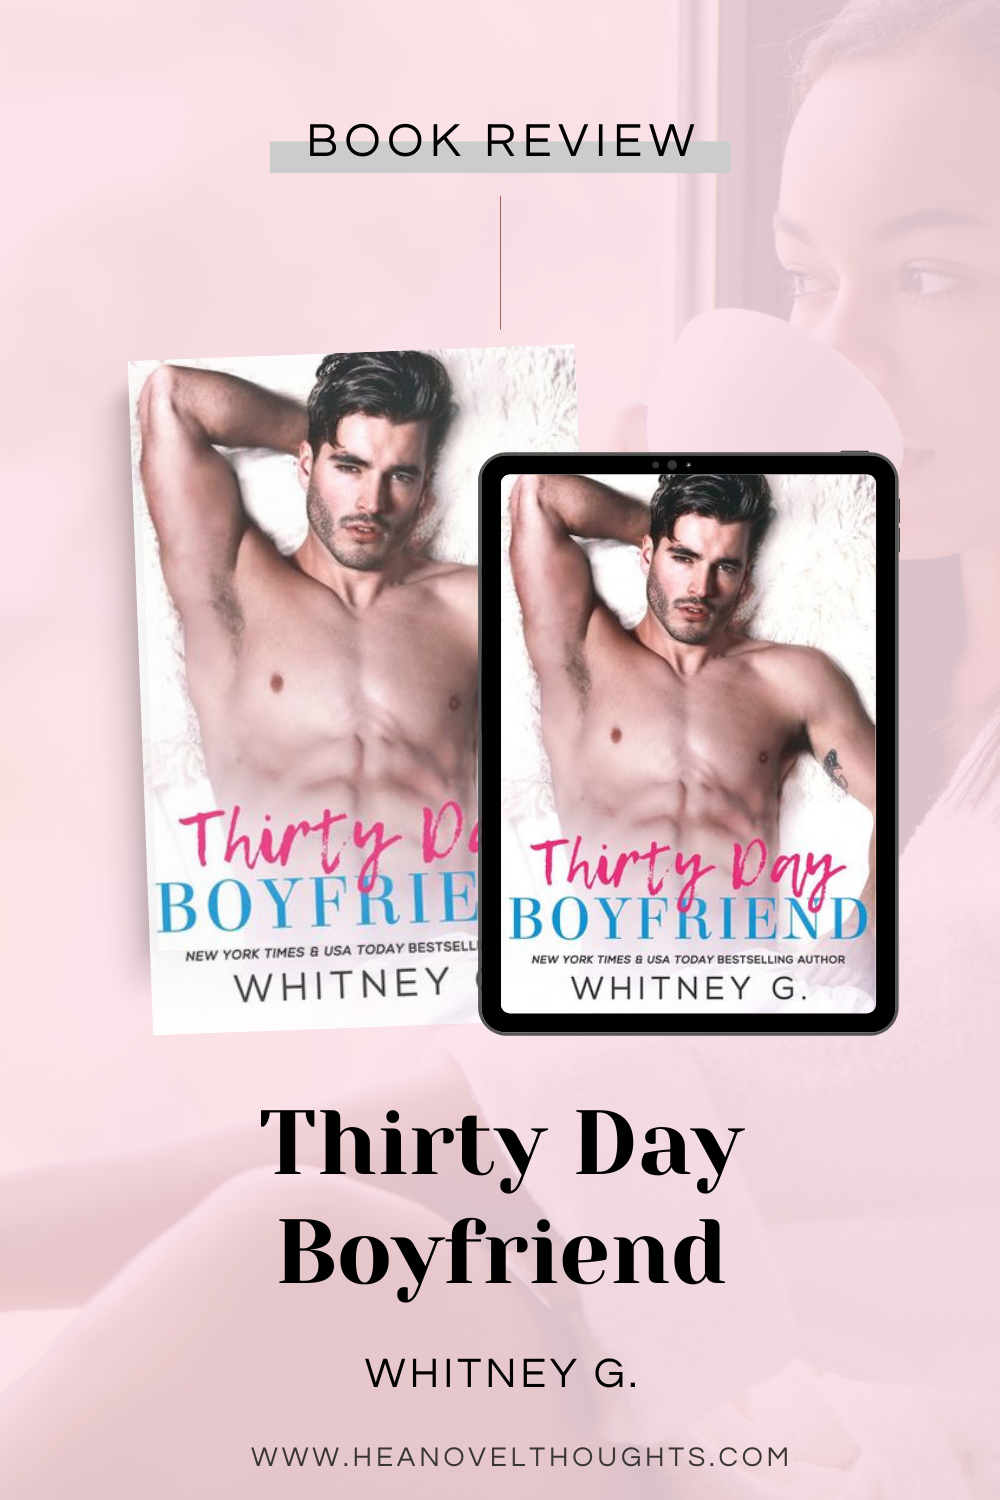 Thirty Day Boyfriend by Whitney G